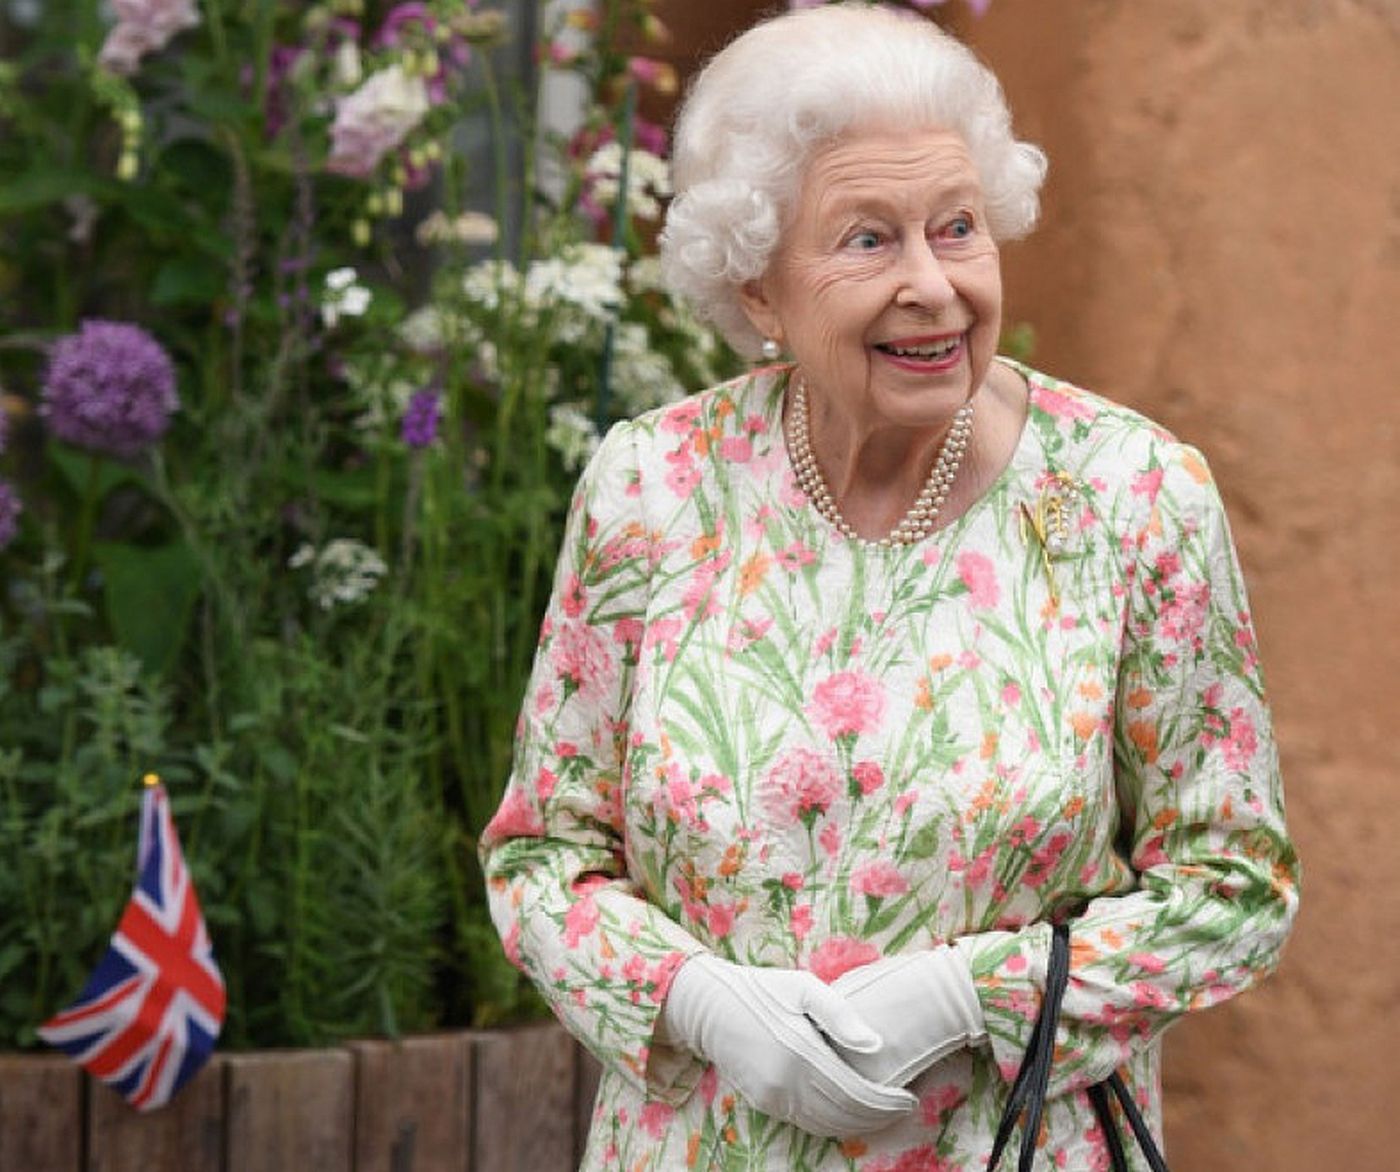 Regina Elisabeta renunță la câteva creații unice. S-au pus în vânzare la magazinul regal